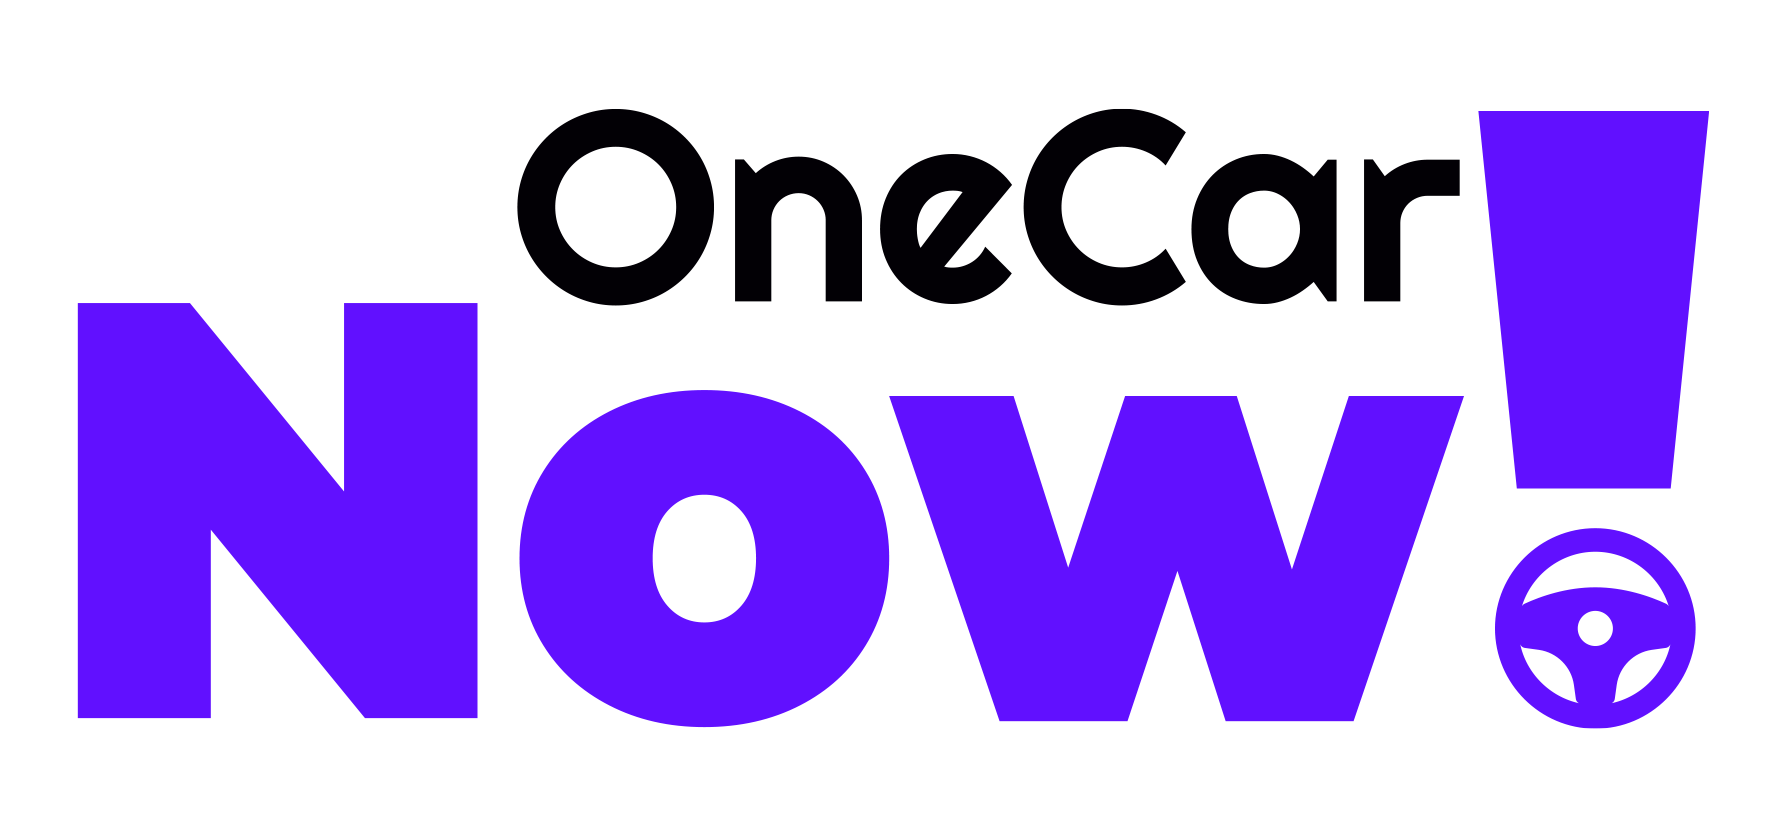 OneCarNow! logo